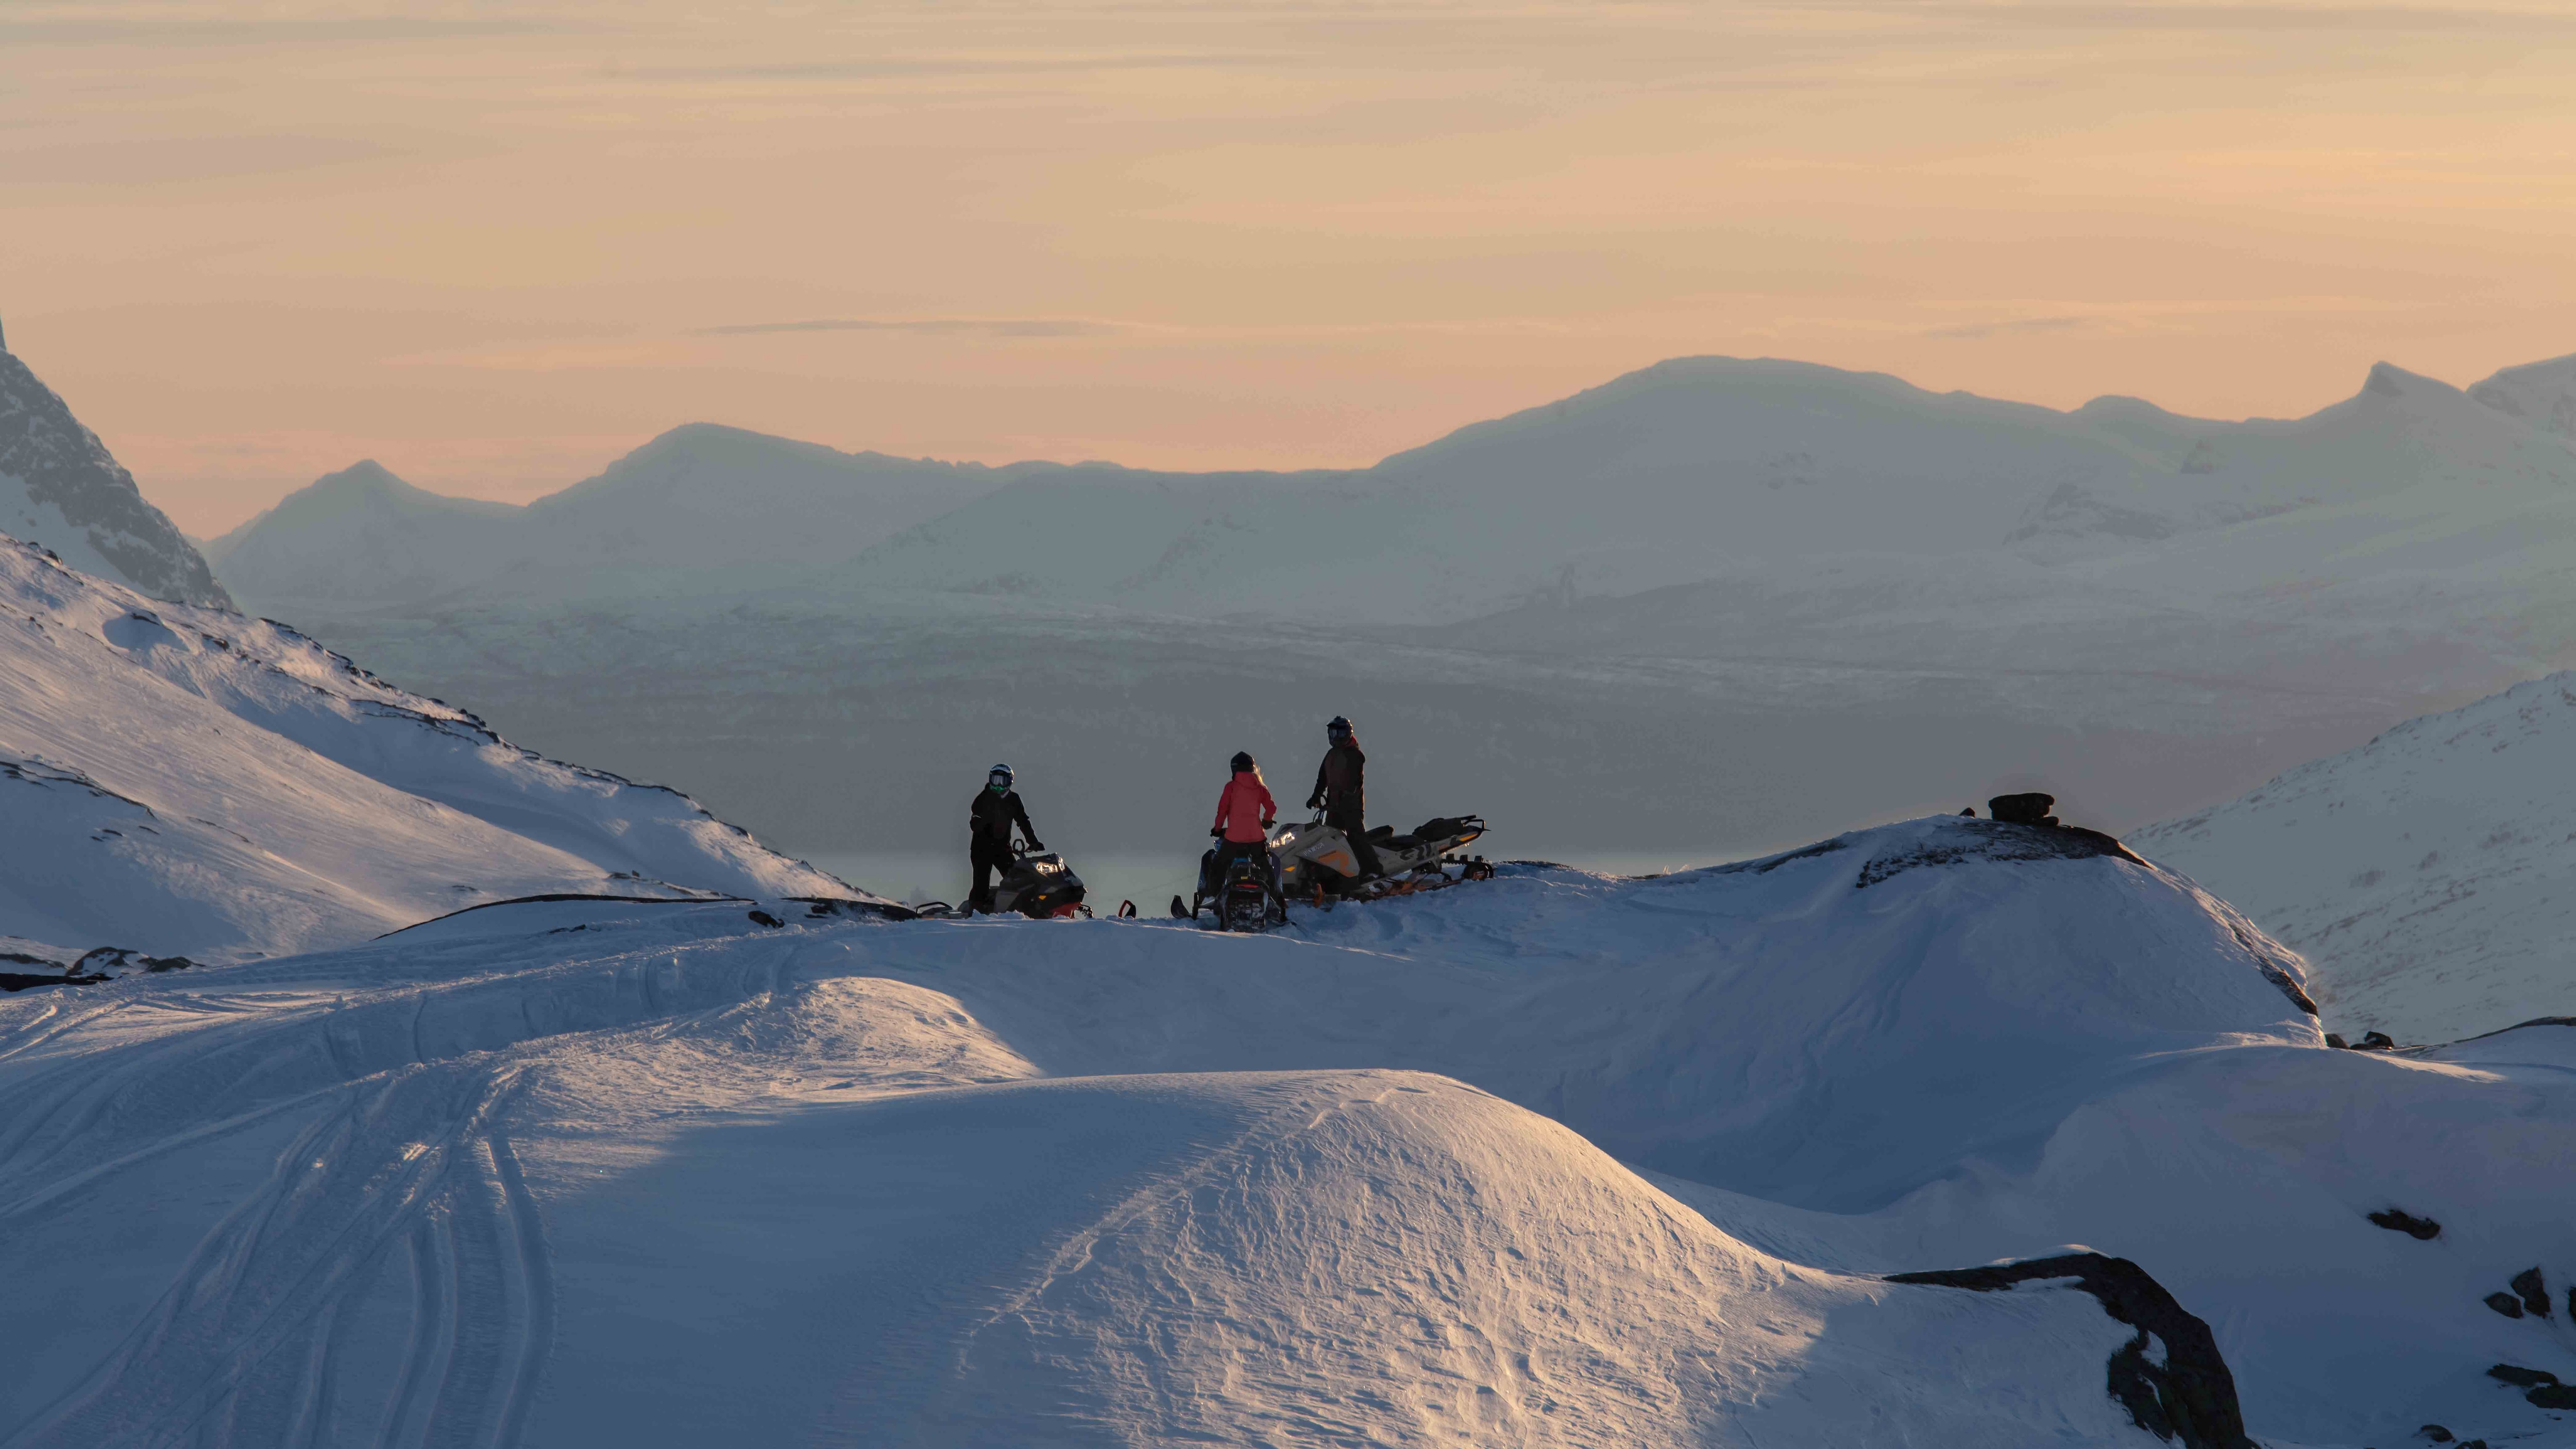 Ski-Doo snøscooter parkert på fjellet i solnedgang